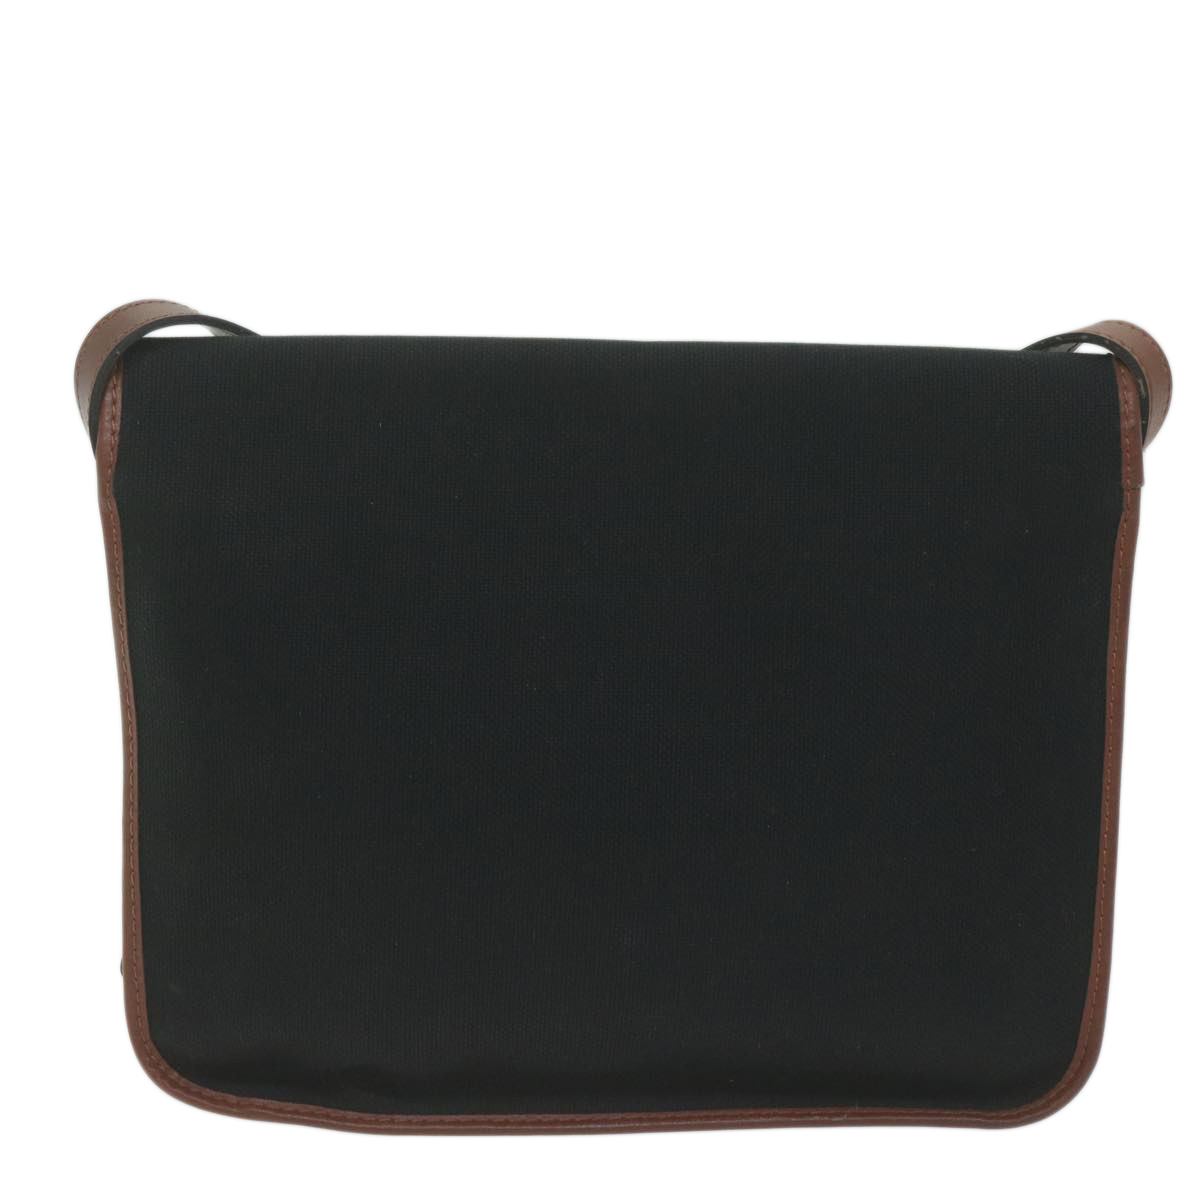 SAINT LAURENT Shoulder Bag Canvas Black Brown Auth ep2942